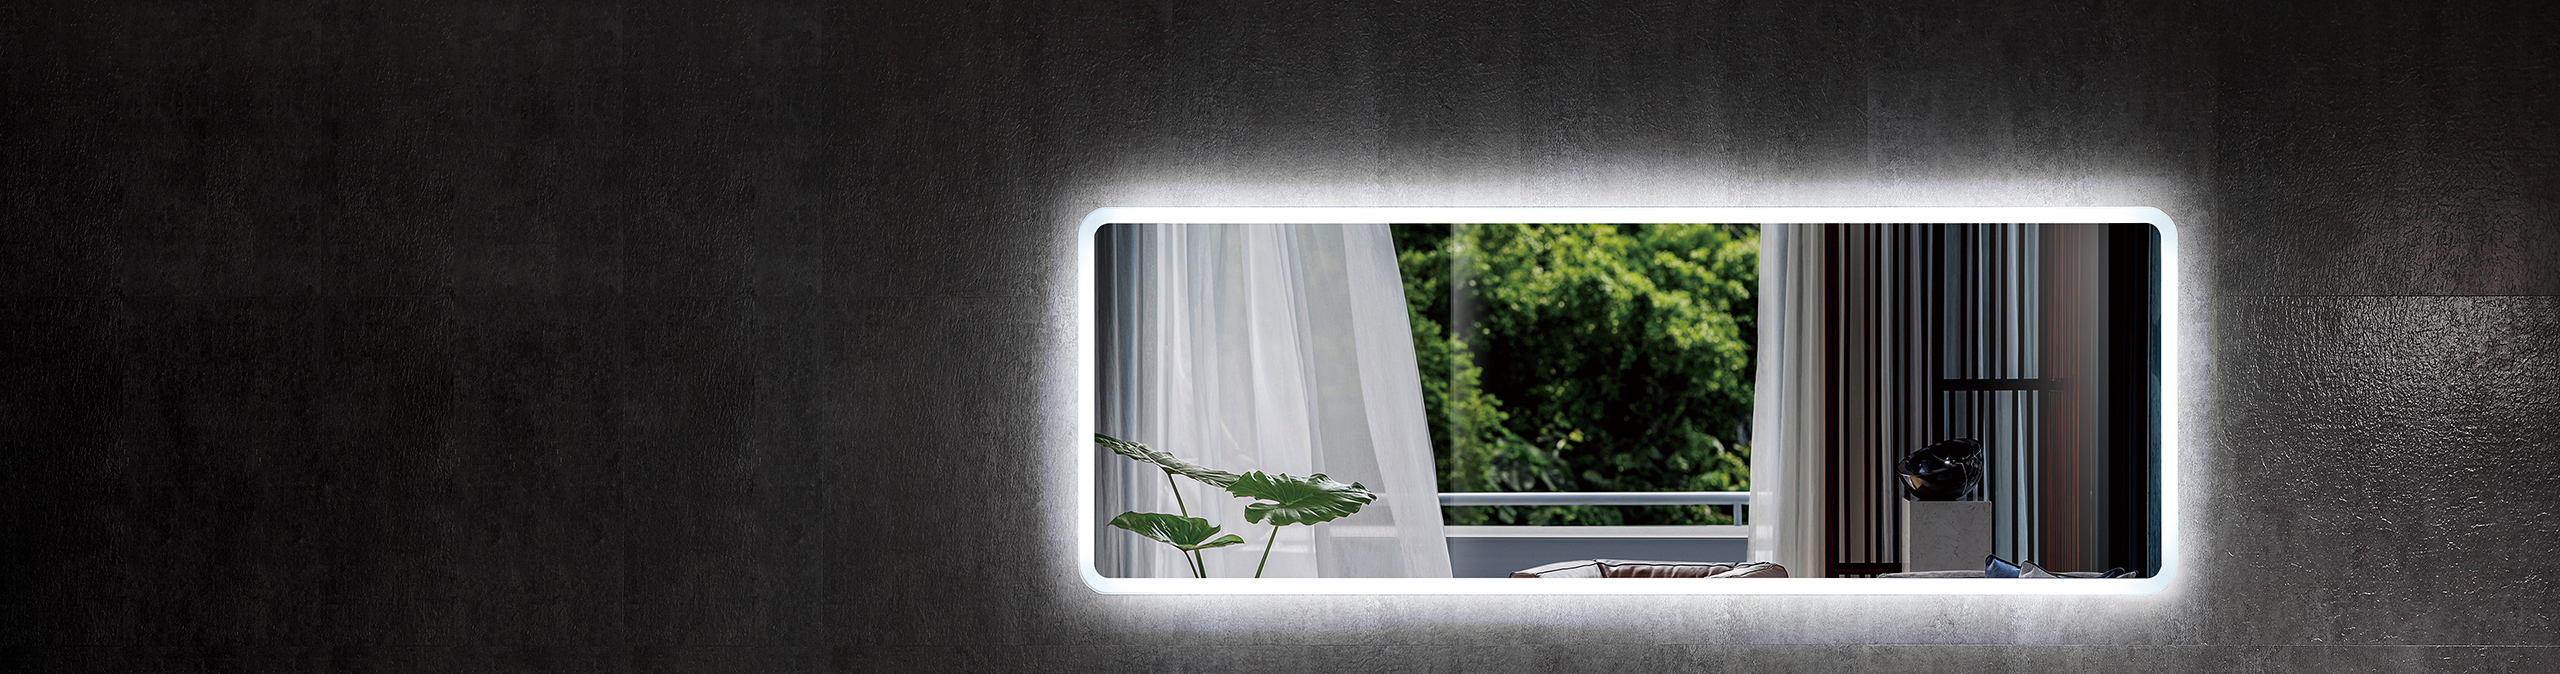 Specchio da pavimento a LED senza cornice di grandi dimensioni  personalizzato Specchietto per il corpo intero con luce a LED - Cina  Specchio e specchio per medicazione prezzo